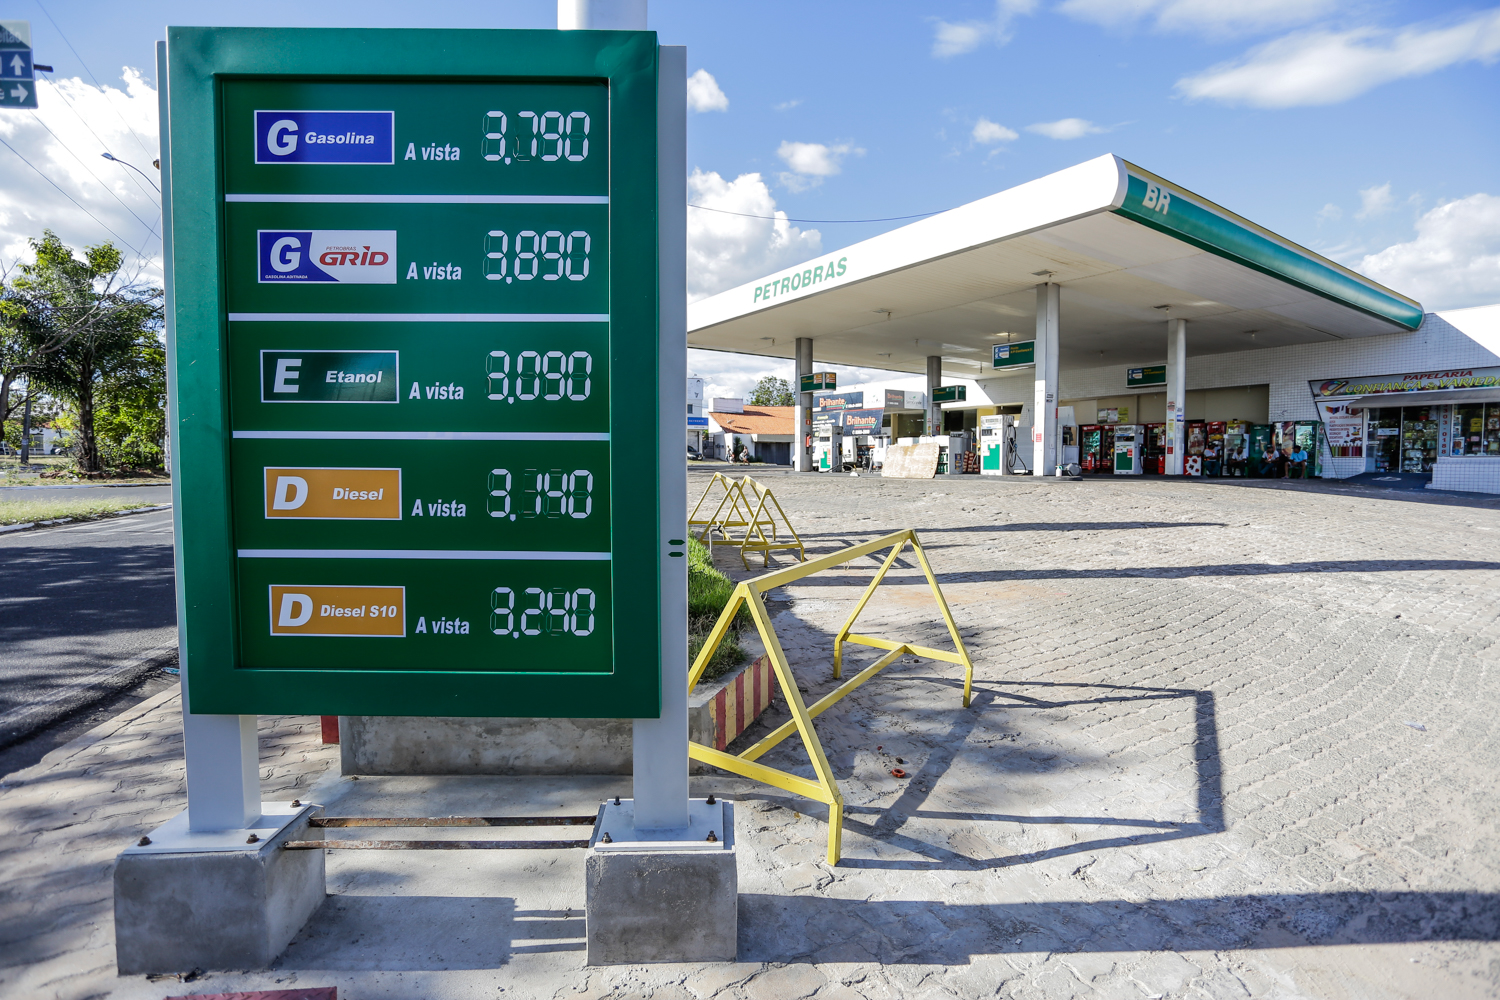 Posto de gasolina Petrobras 